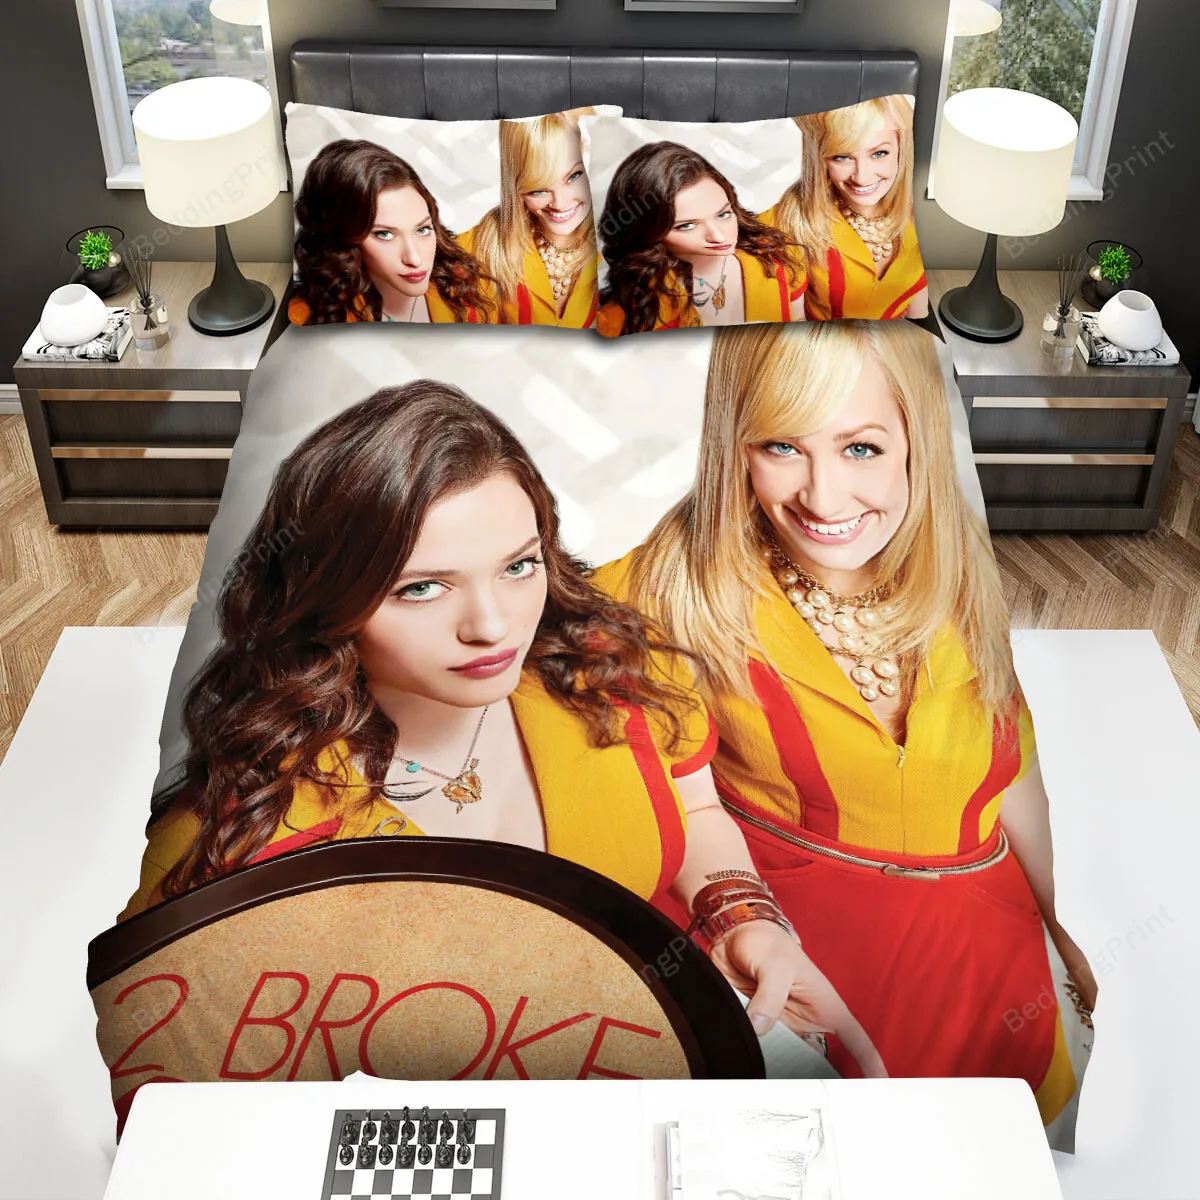 2 Broke Girls (20112017) Movie Poster 2 Bed Sheets Spread Comforter Duvet Cover Bedding Sets